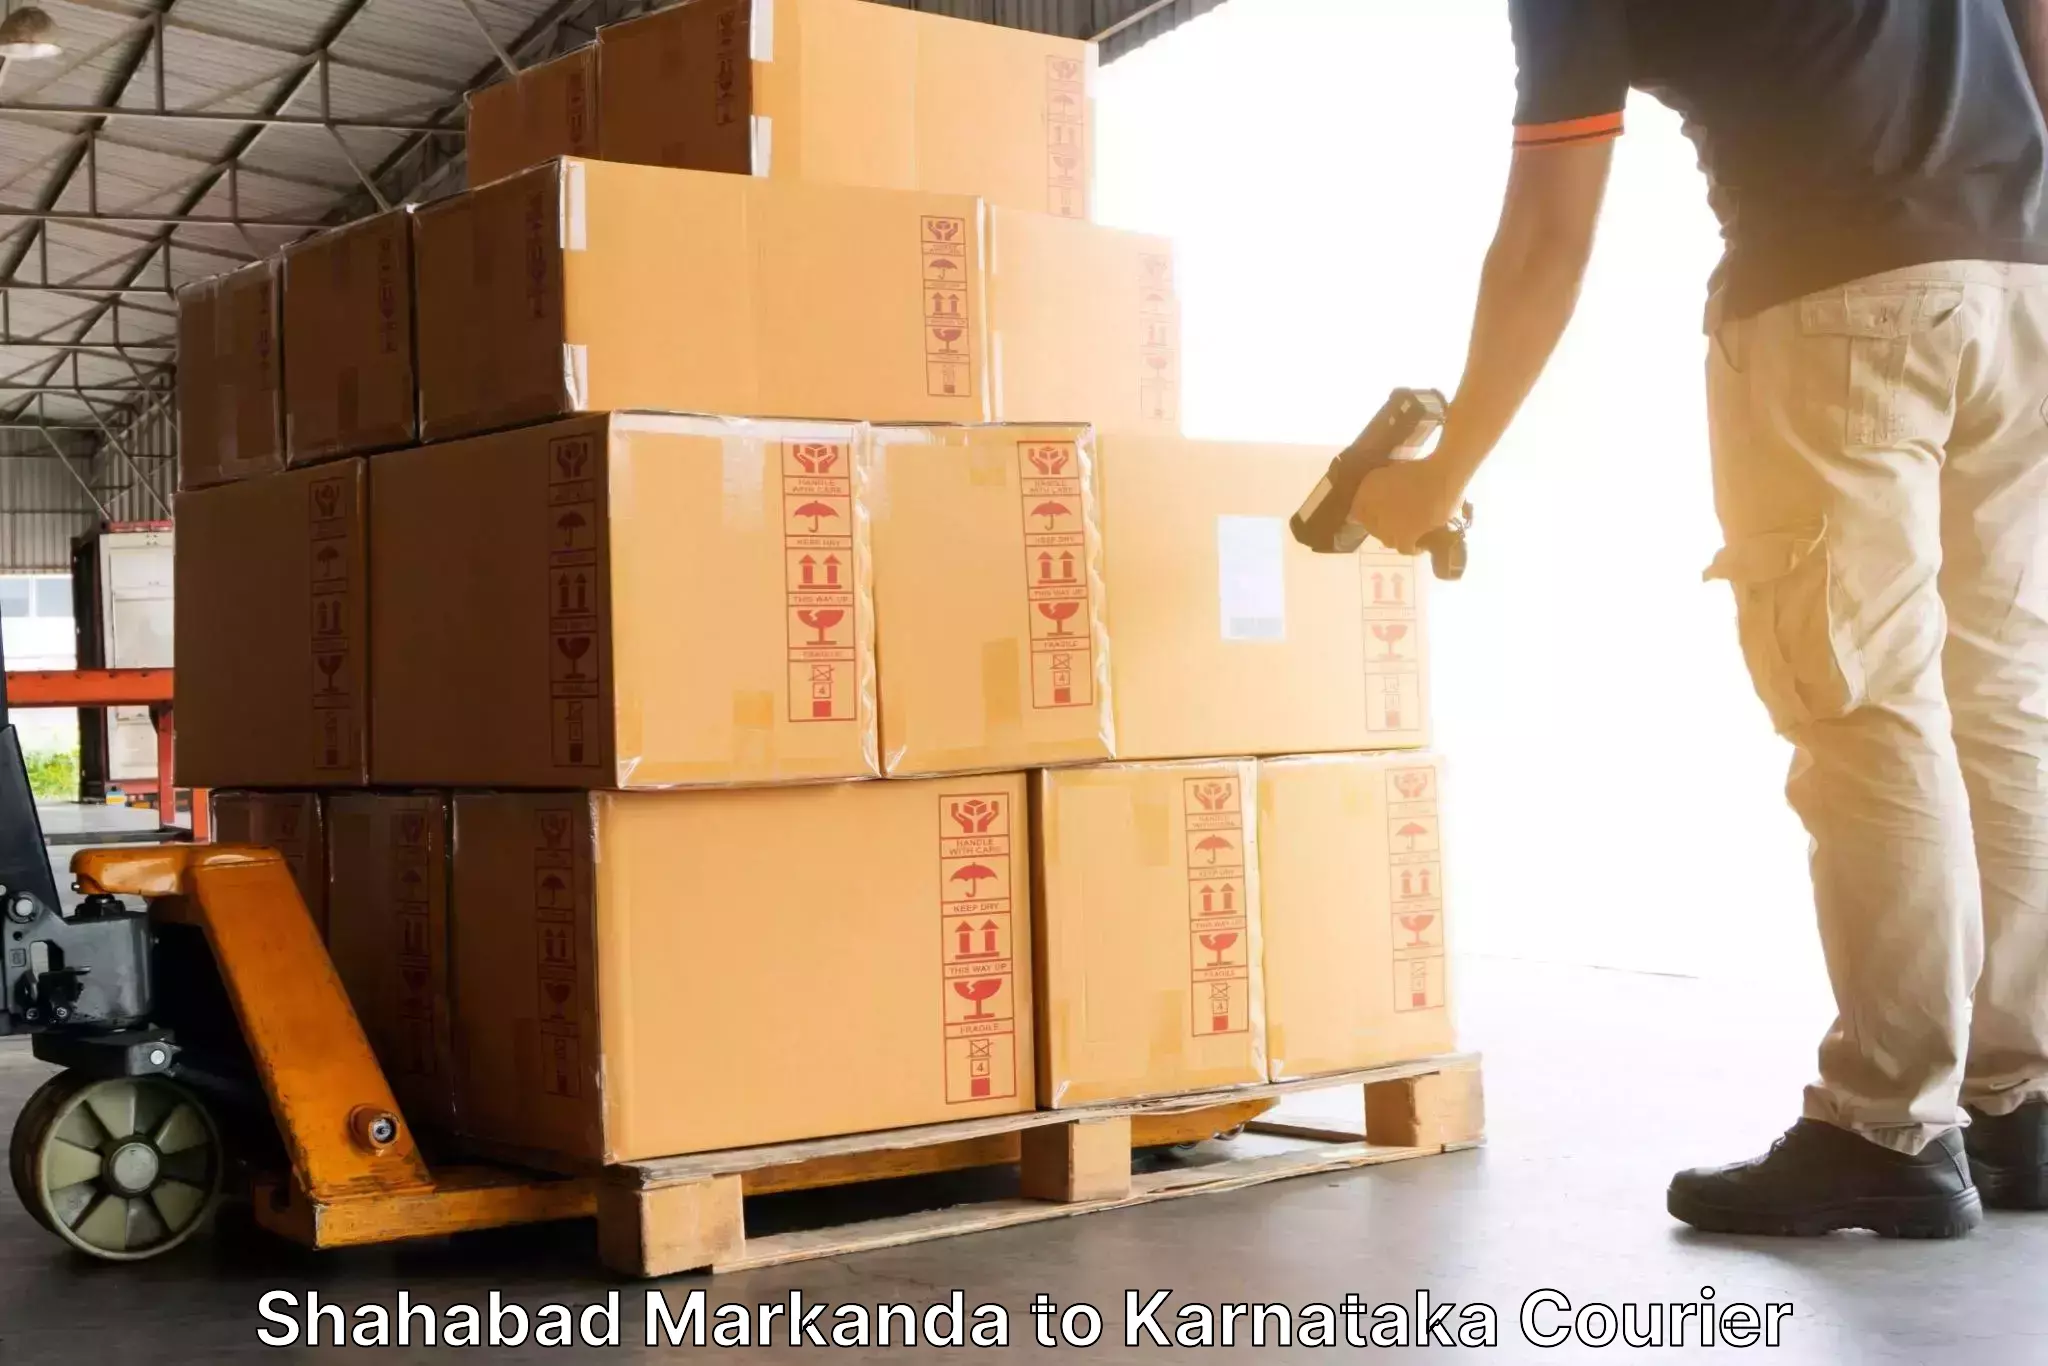 Easy access courier services Shahabad Markanda to Manvi